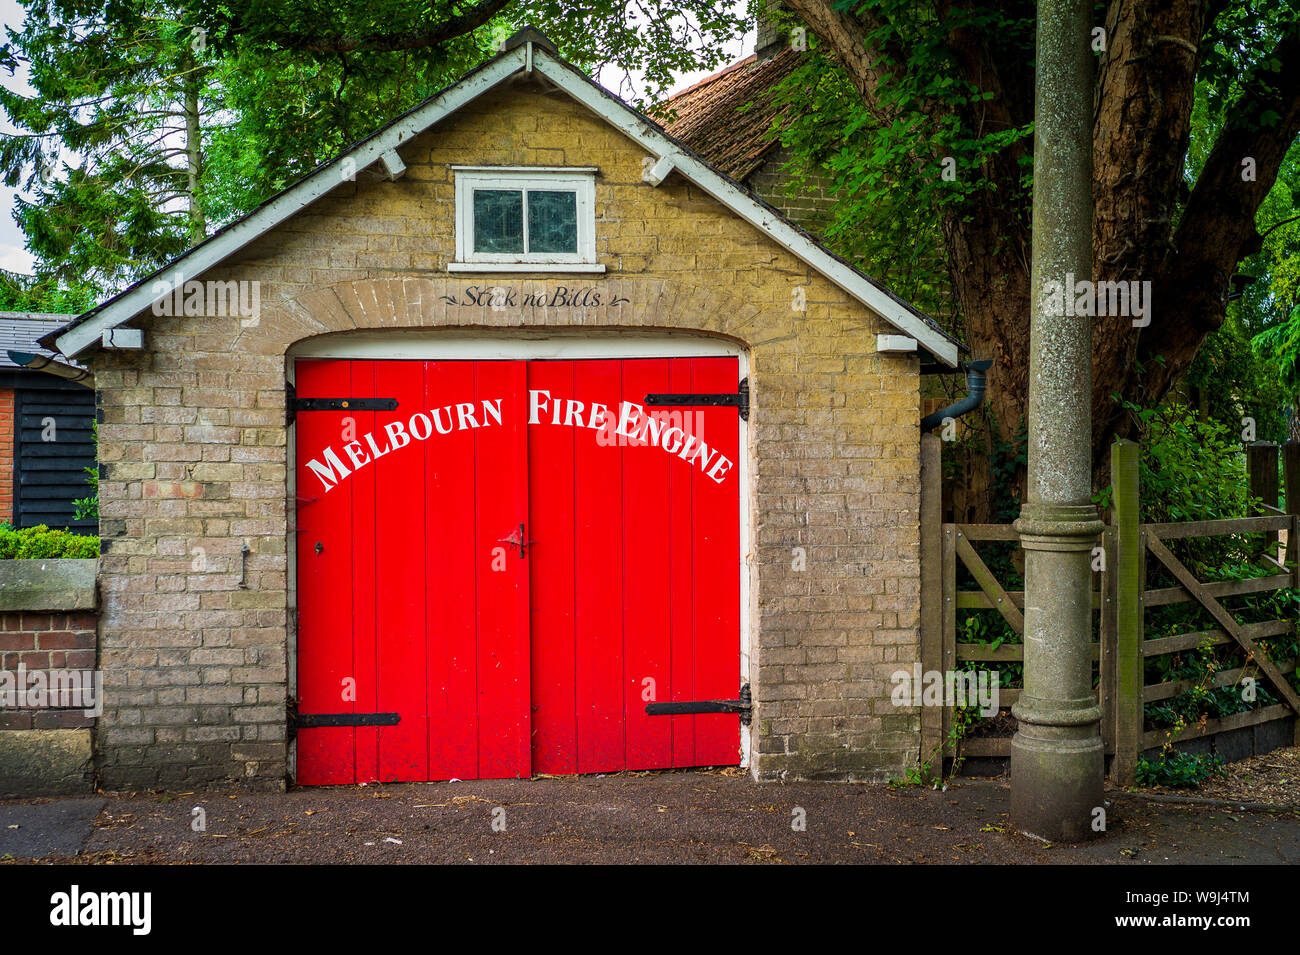 Melbourn Fire Engine Shed Grade II, Melbourn Cambridgeshire UK. Construit en 1862 pour abriter une paroisse à incendie acheté par abonnement Banque D'Images